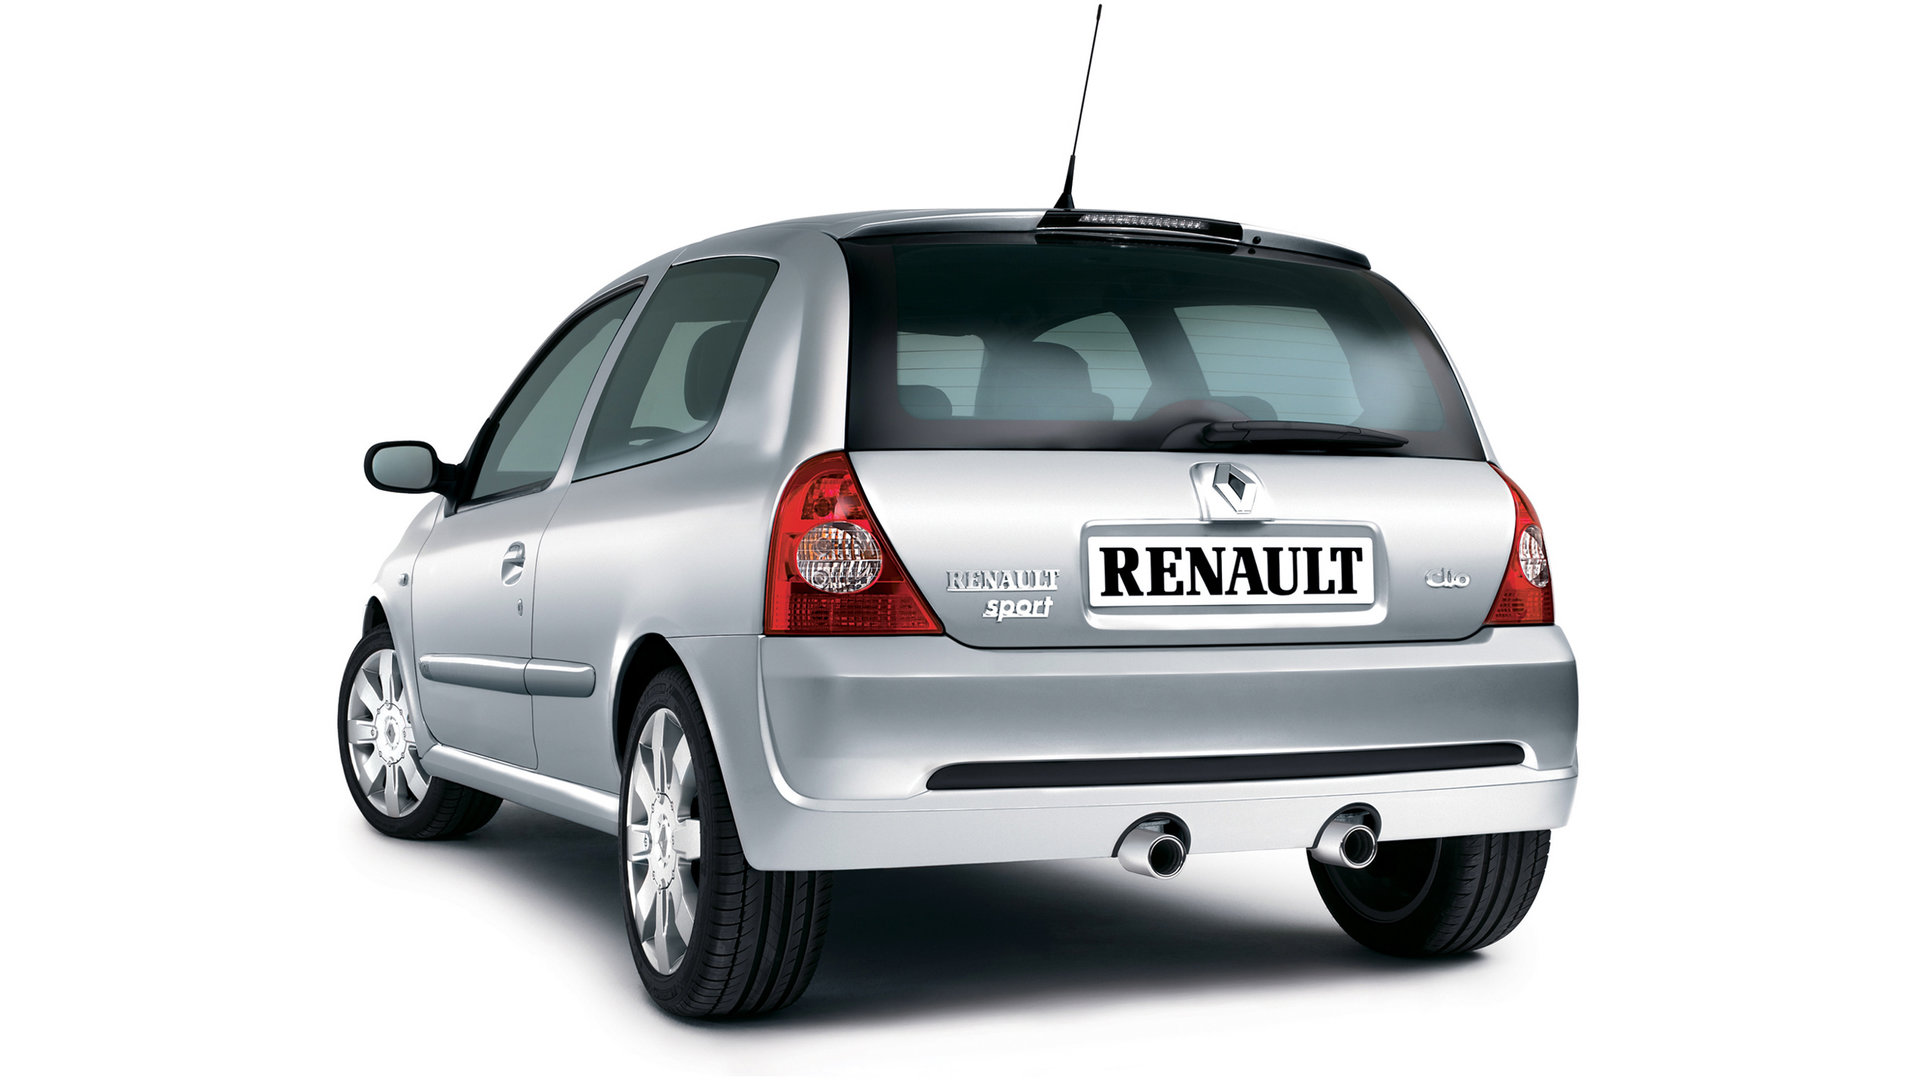 Renault Clio 2.0 16v RS